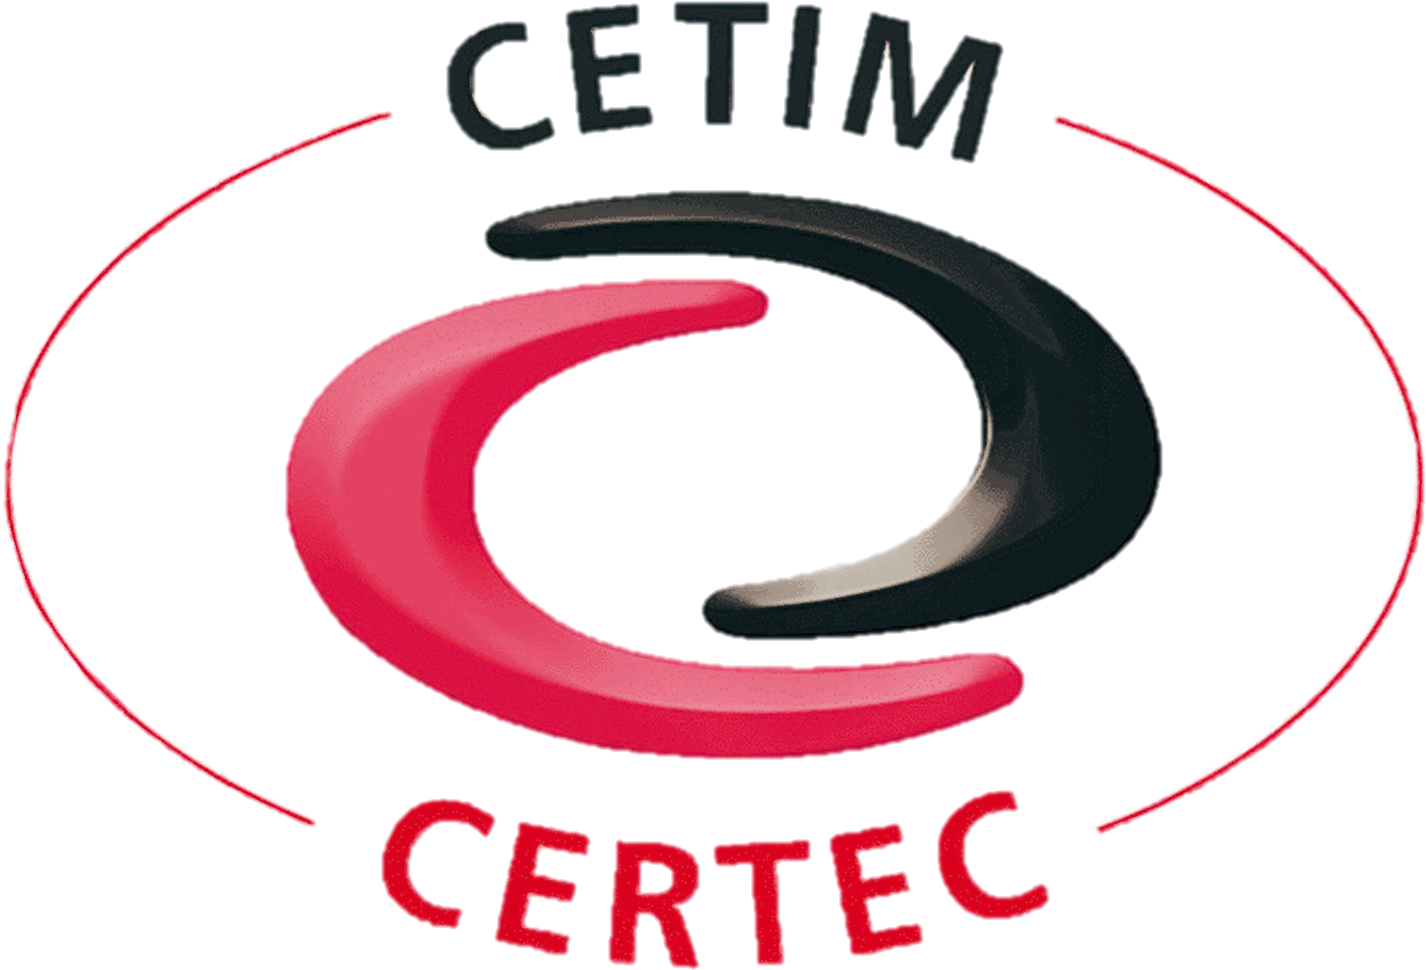 Cetim Certec Trans - Cetim Certec Clipart (1772x1051), Png Download